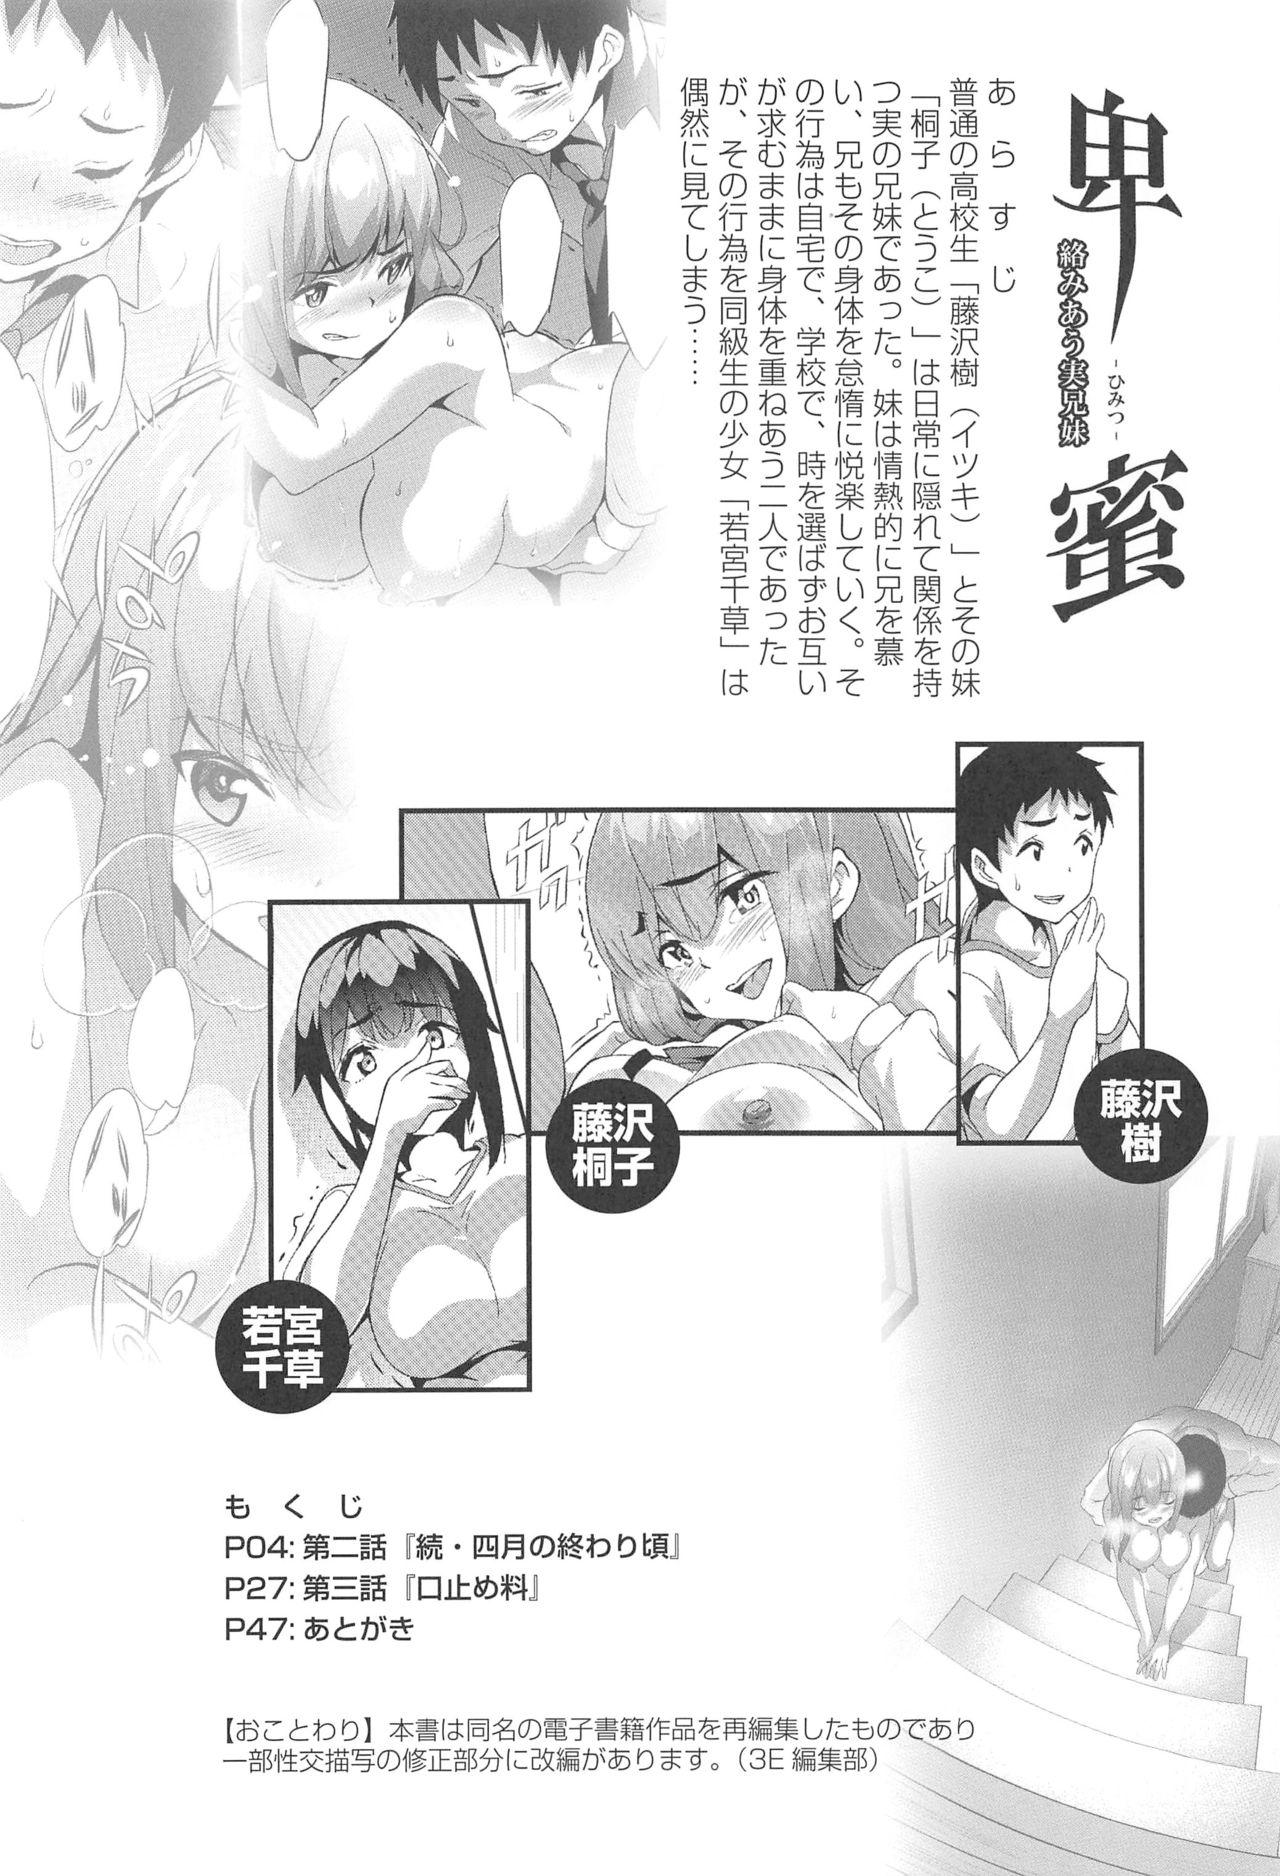 Busty Himitsu 2 & 3 "Zoku 4-gatsu no Owarigoro" "Kuchidomeryou" - Original Ngentot - Page 3